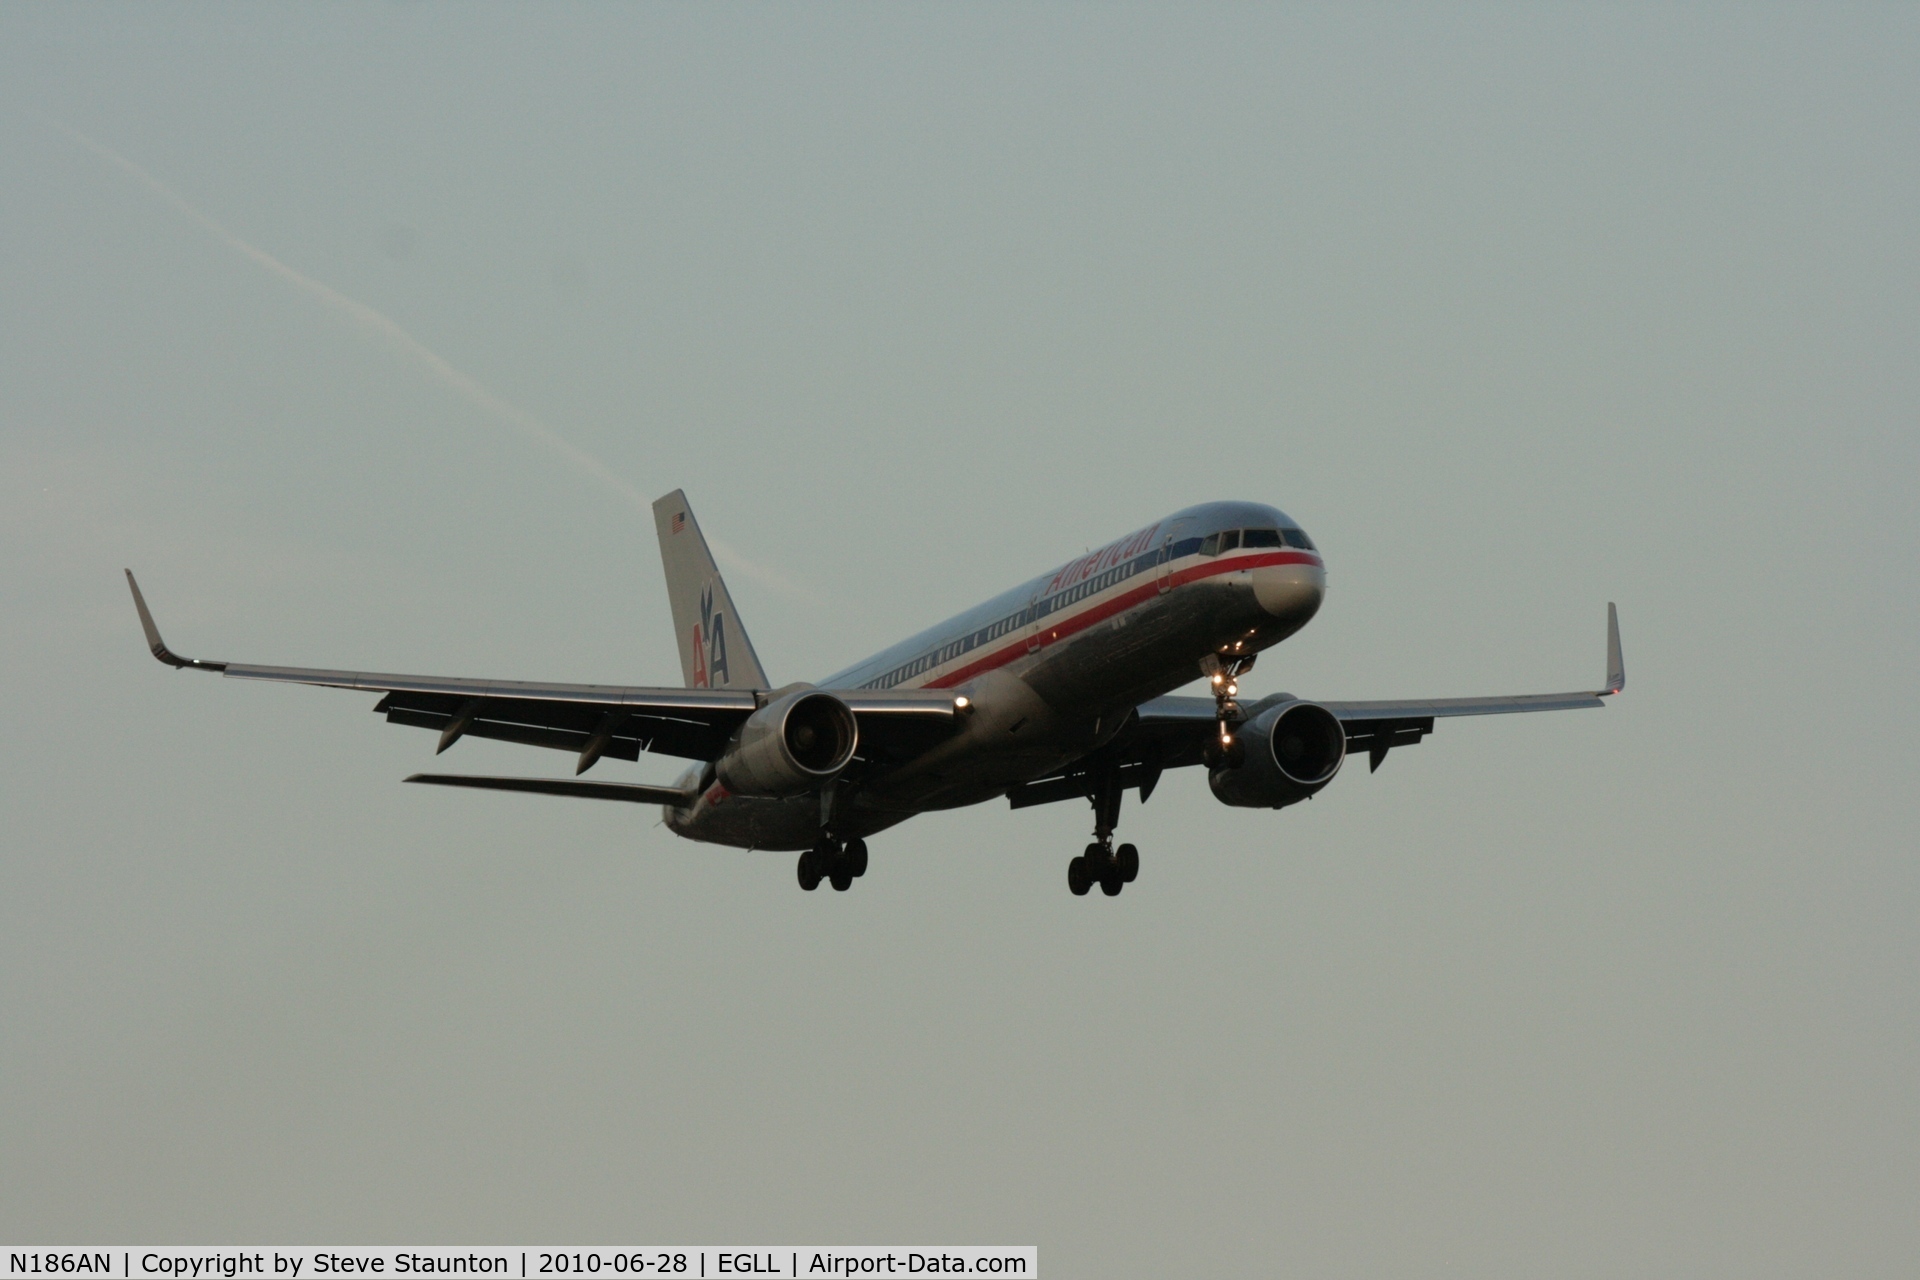 N186AN, 2001 Boeing 757-223 C/N 32380, Taken at Heathrow Airport, June 2010